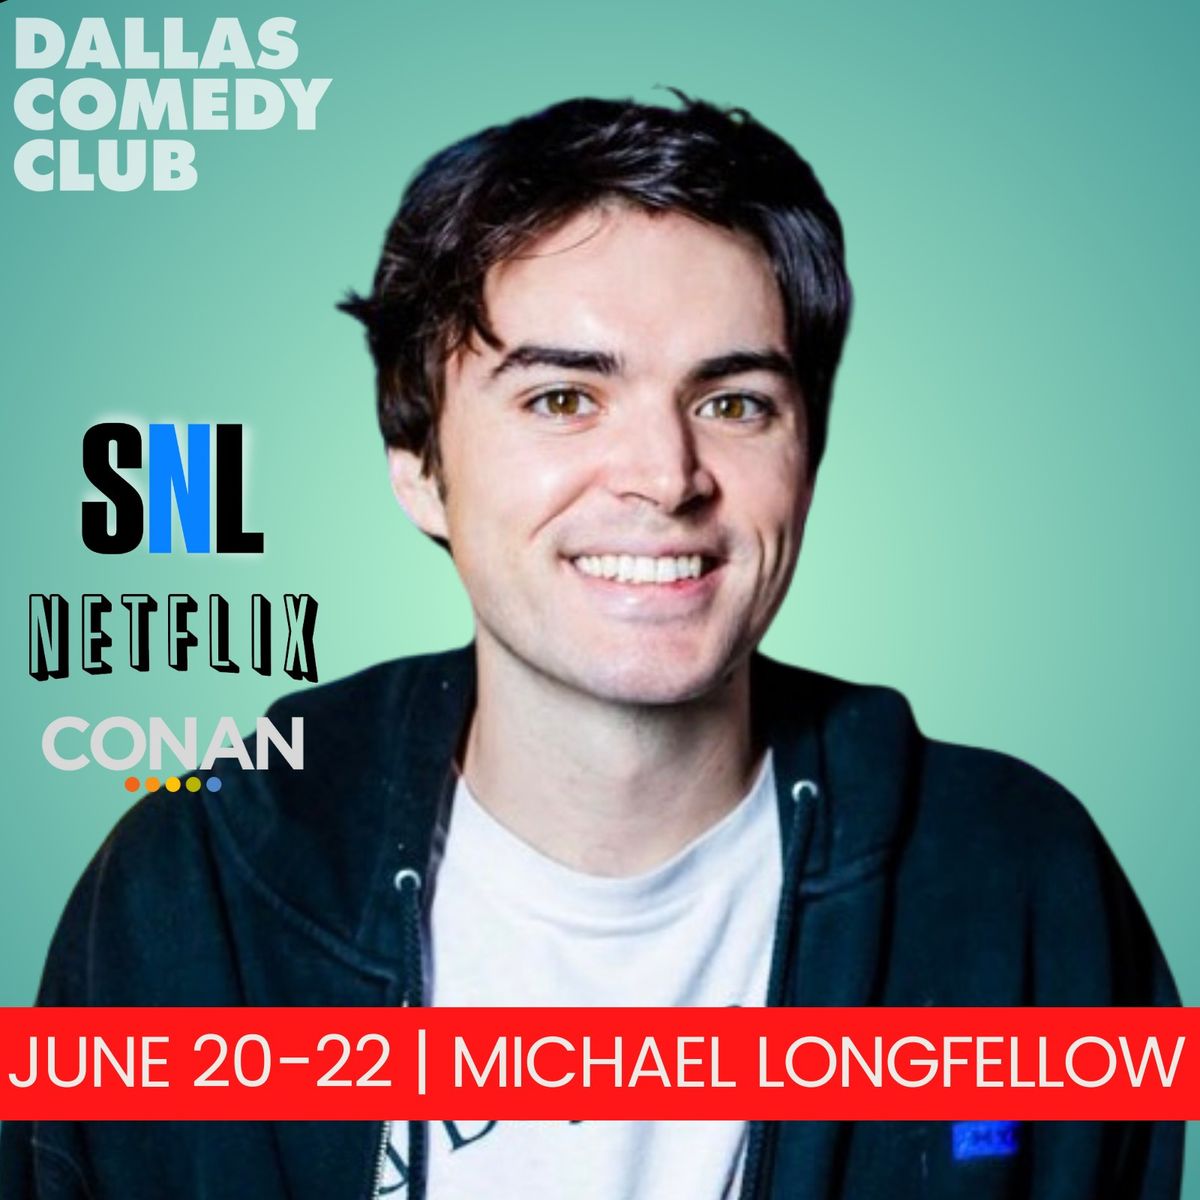 Dallas Comedy Club Presents: Michael Longfellow